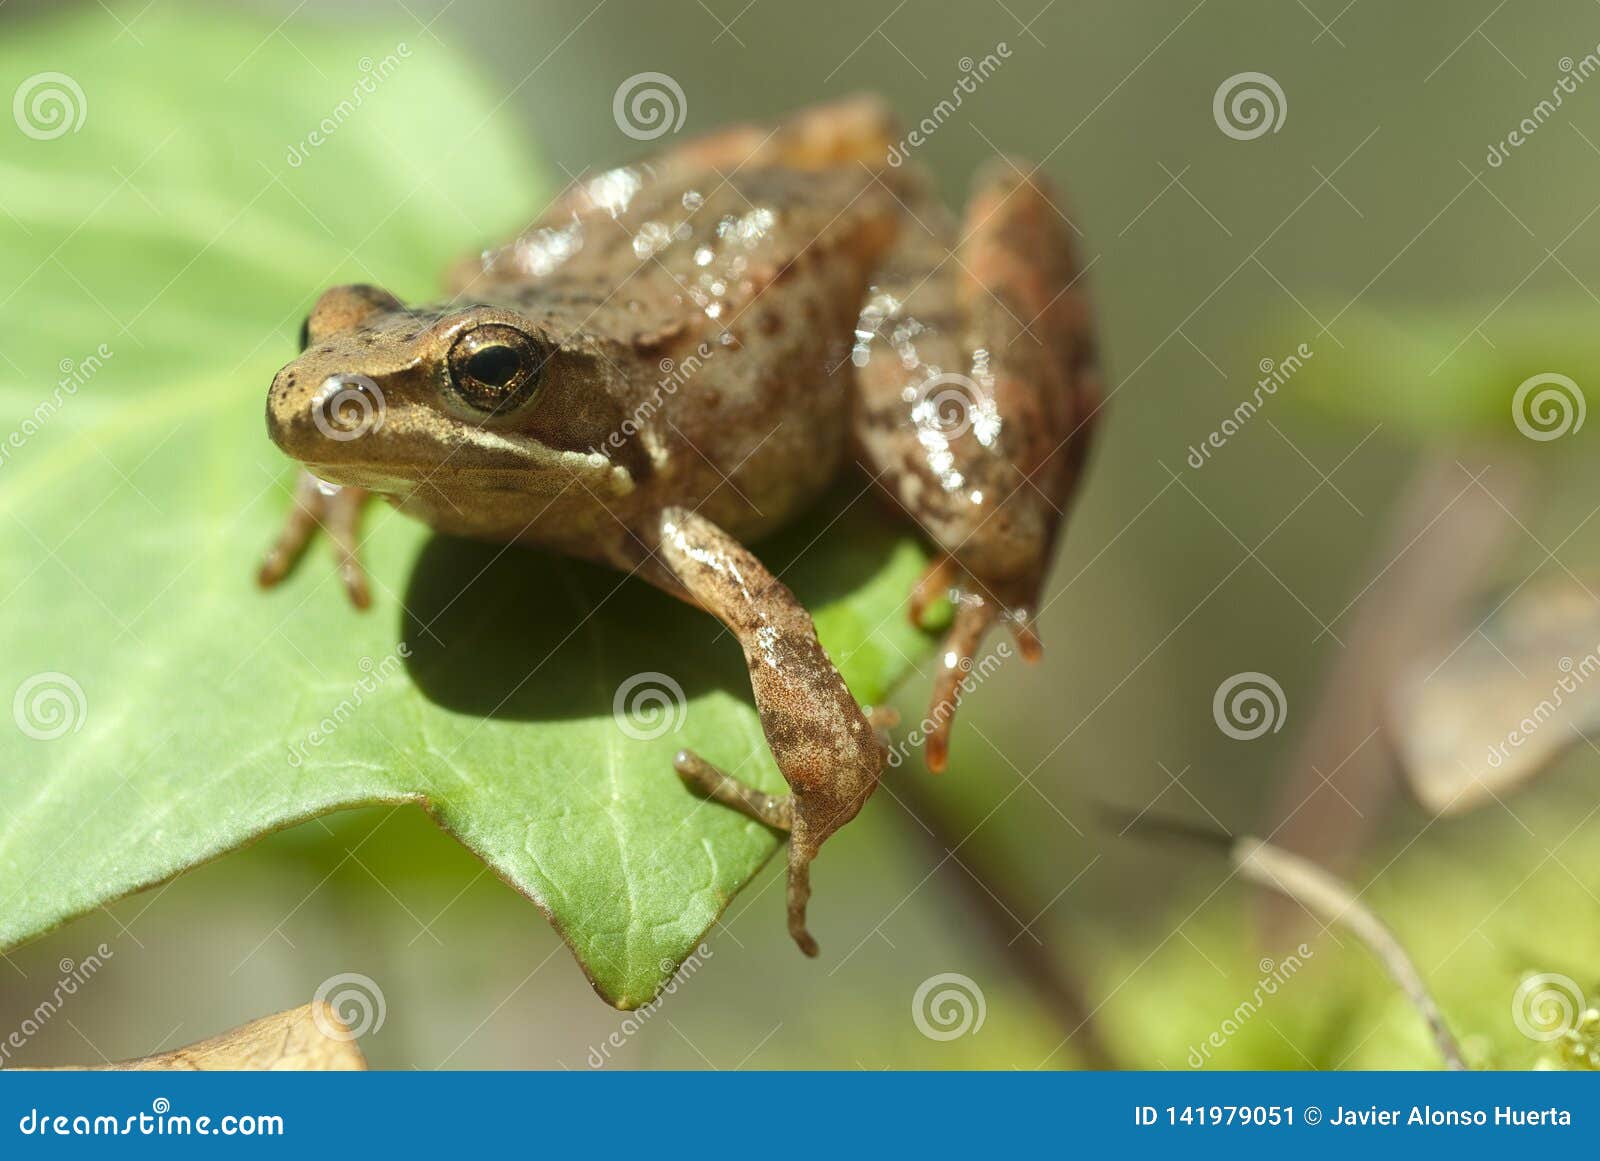 利比亚青蛙蛙属iberica腿长的青蛙库存图片 图片包括有利比亚青蛙蛙属iberica腿长的青蛙